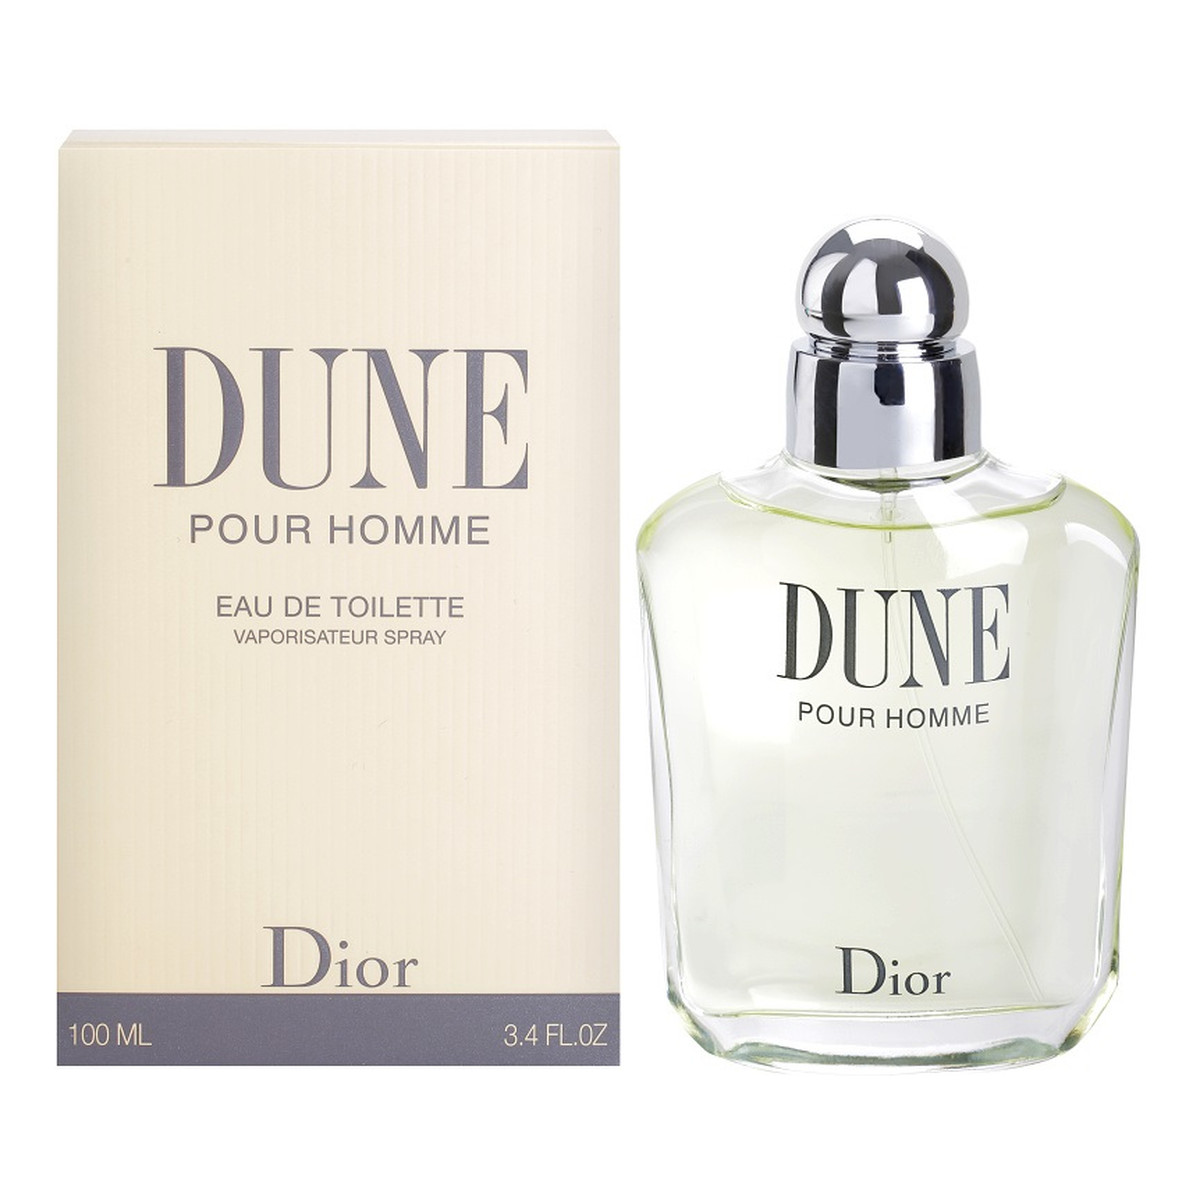 Dior Dune Homme woda toaletowa dla mężczyzn 100ml